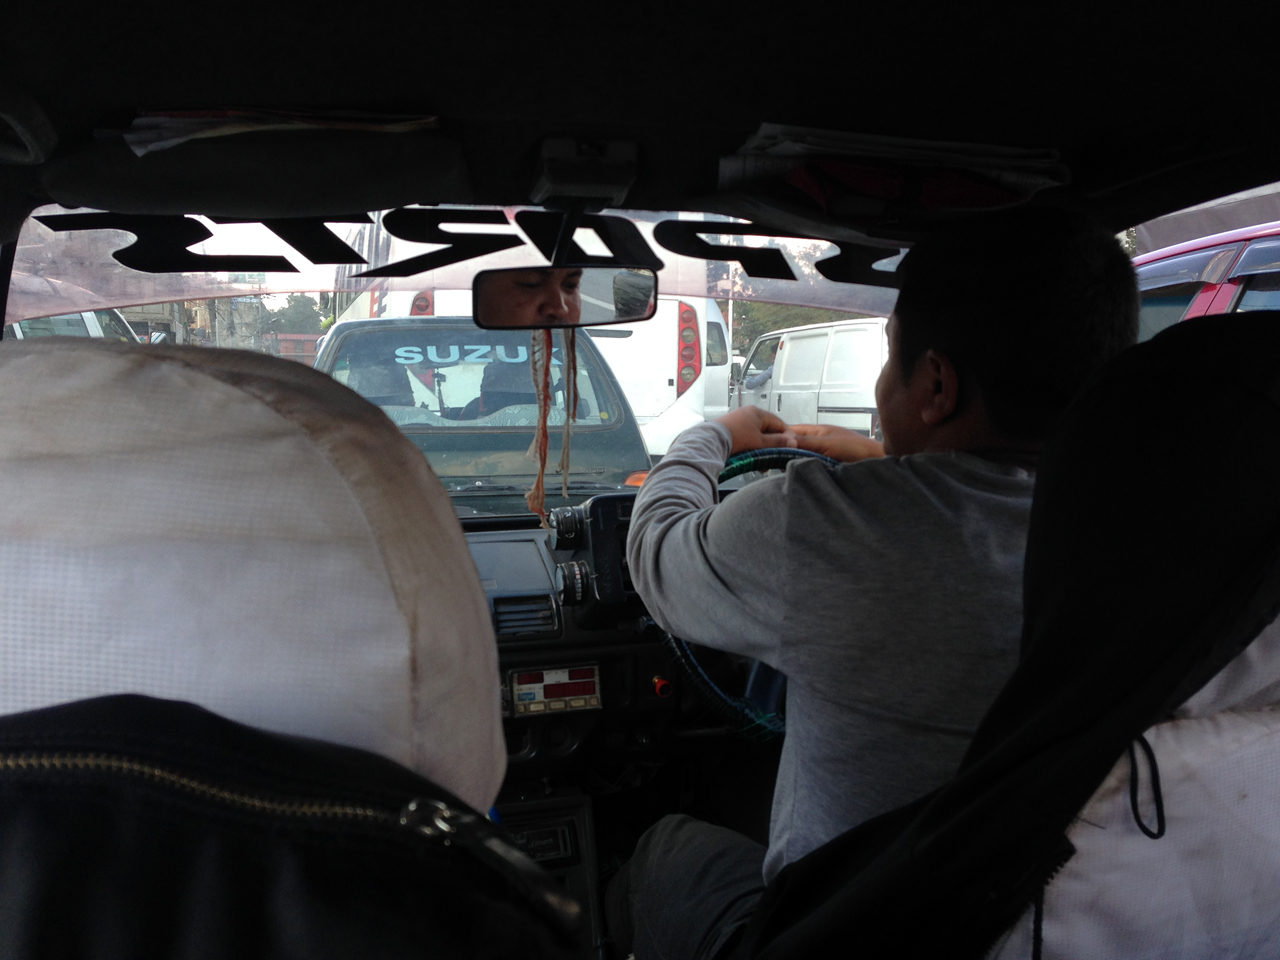 400루피(한화 4400원)라는 적정 가격에 나를 타멜까지 데려다준 택시 아저씨.